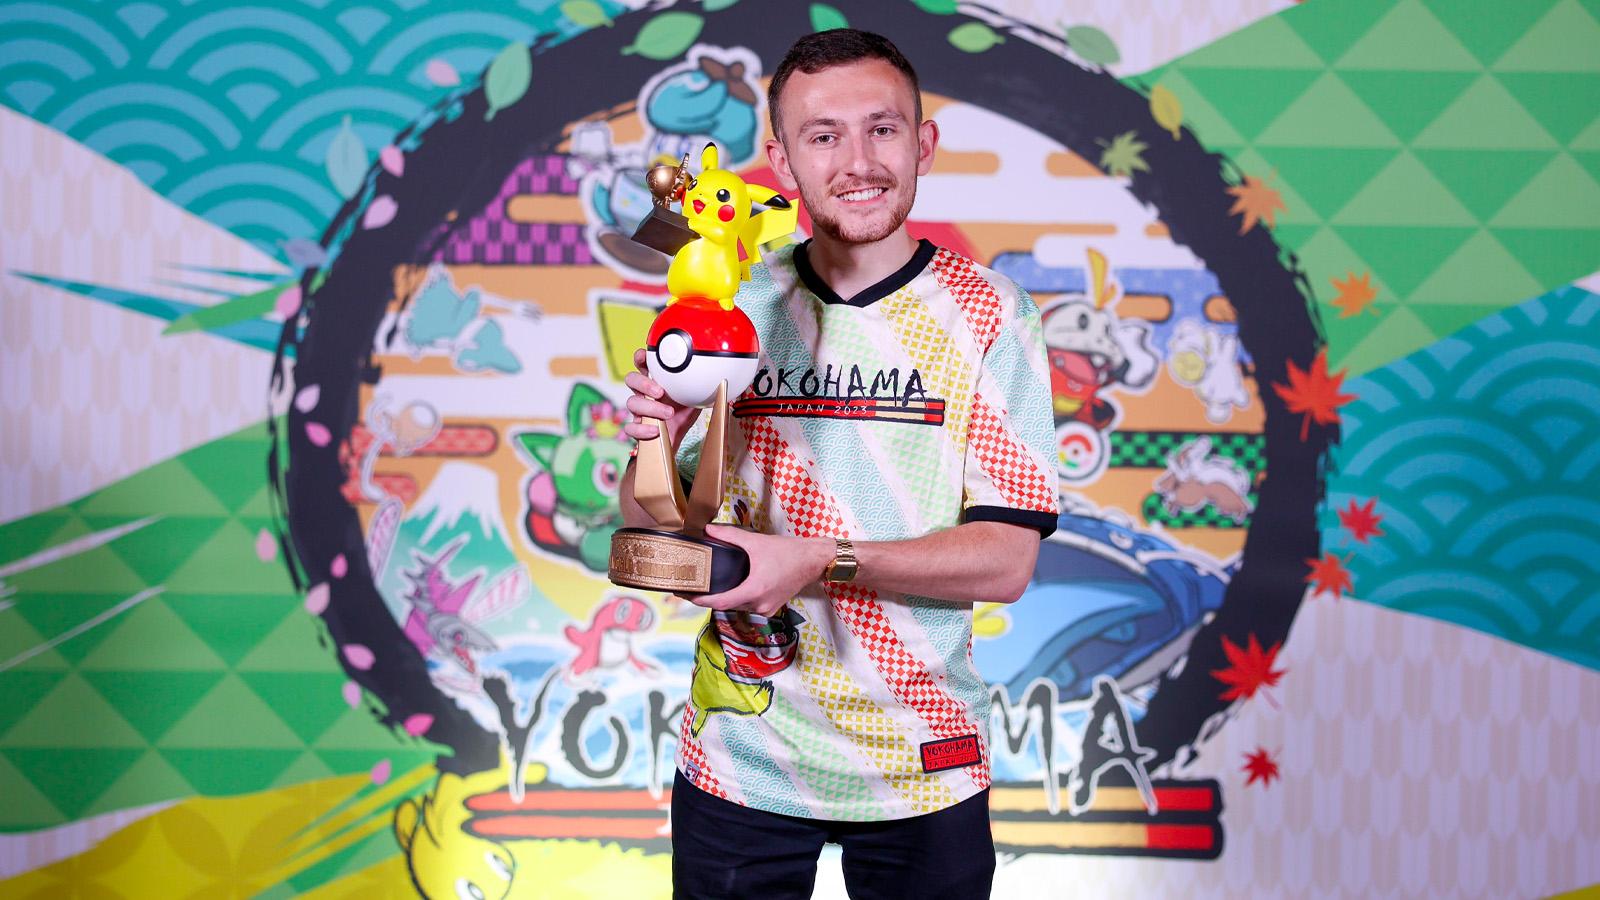 Pokémon World Championships 2022 winner decklist